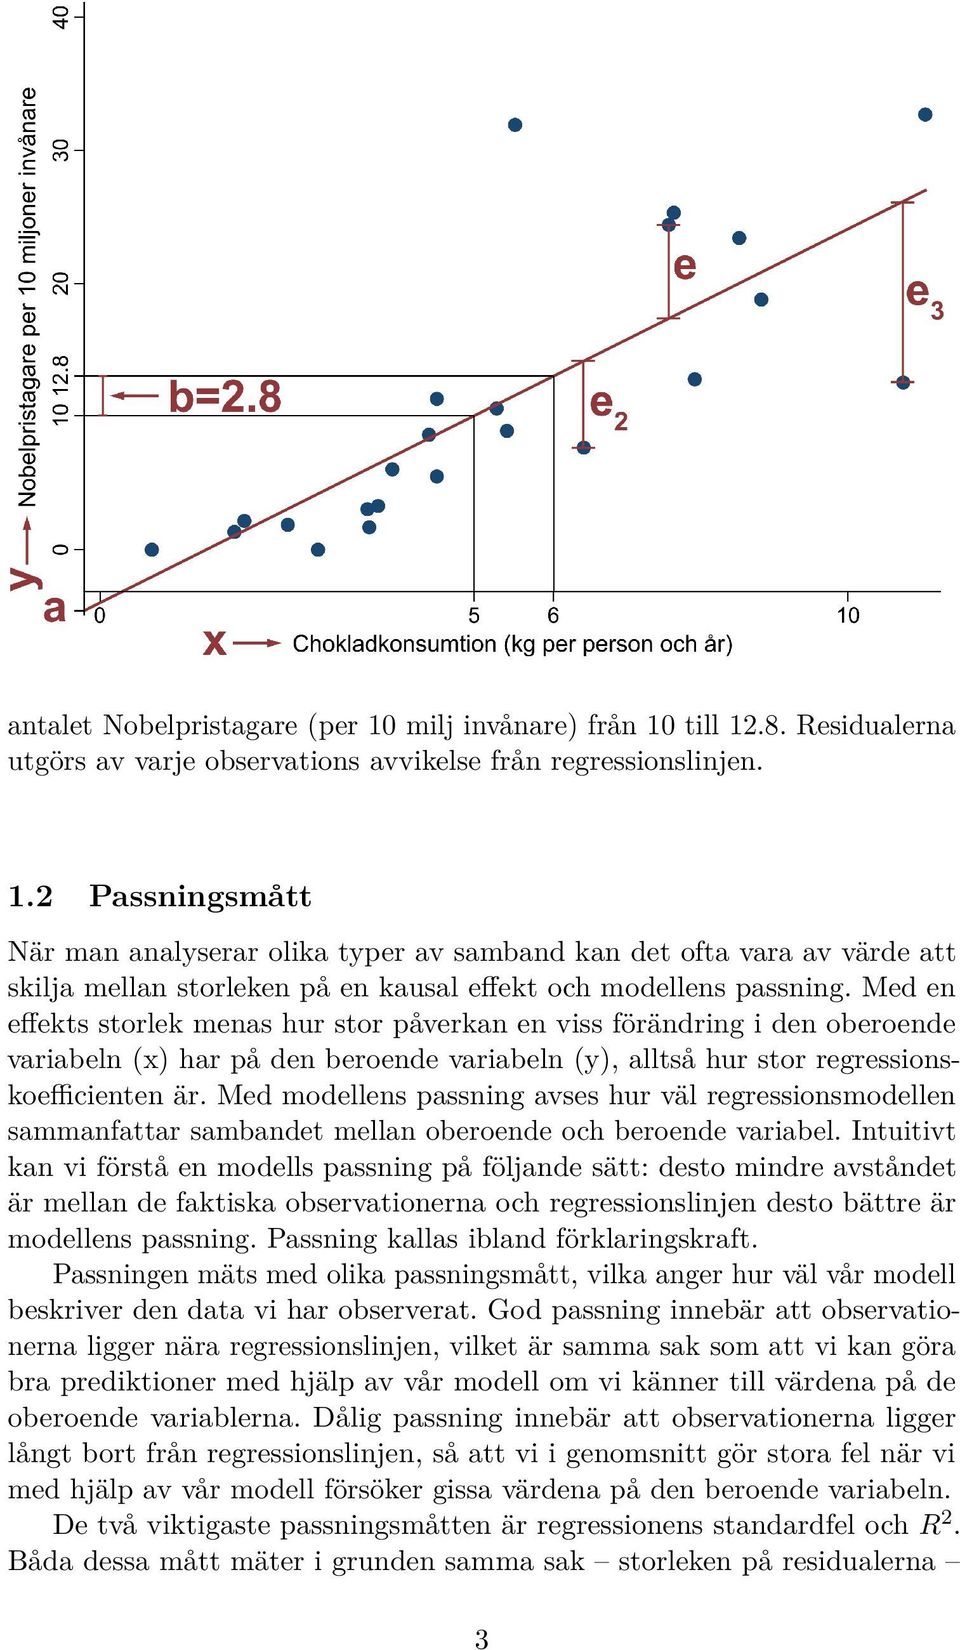 Med modellens passning avses hur väl regressionsmodellen sammanfattar sambandet mellan oberoende och beroende variabel.